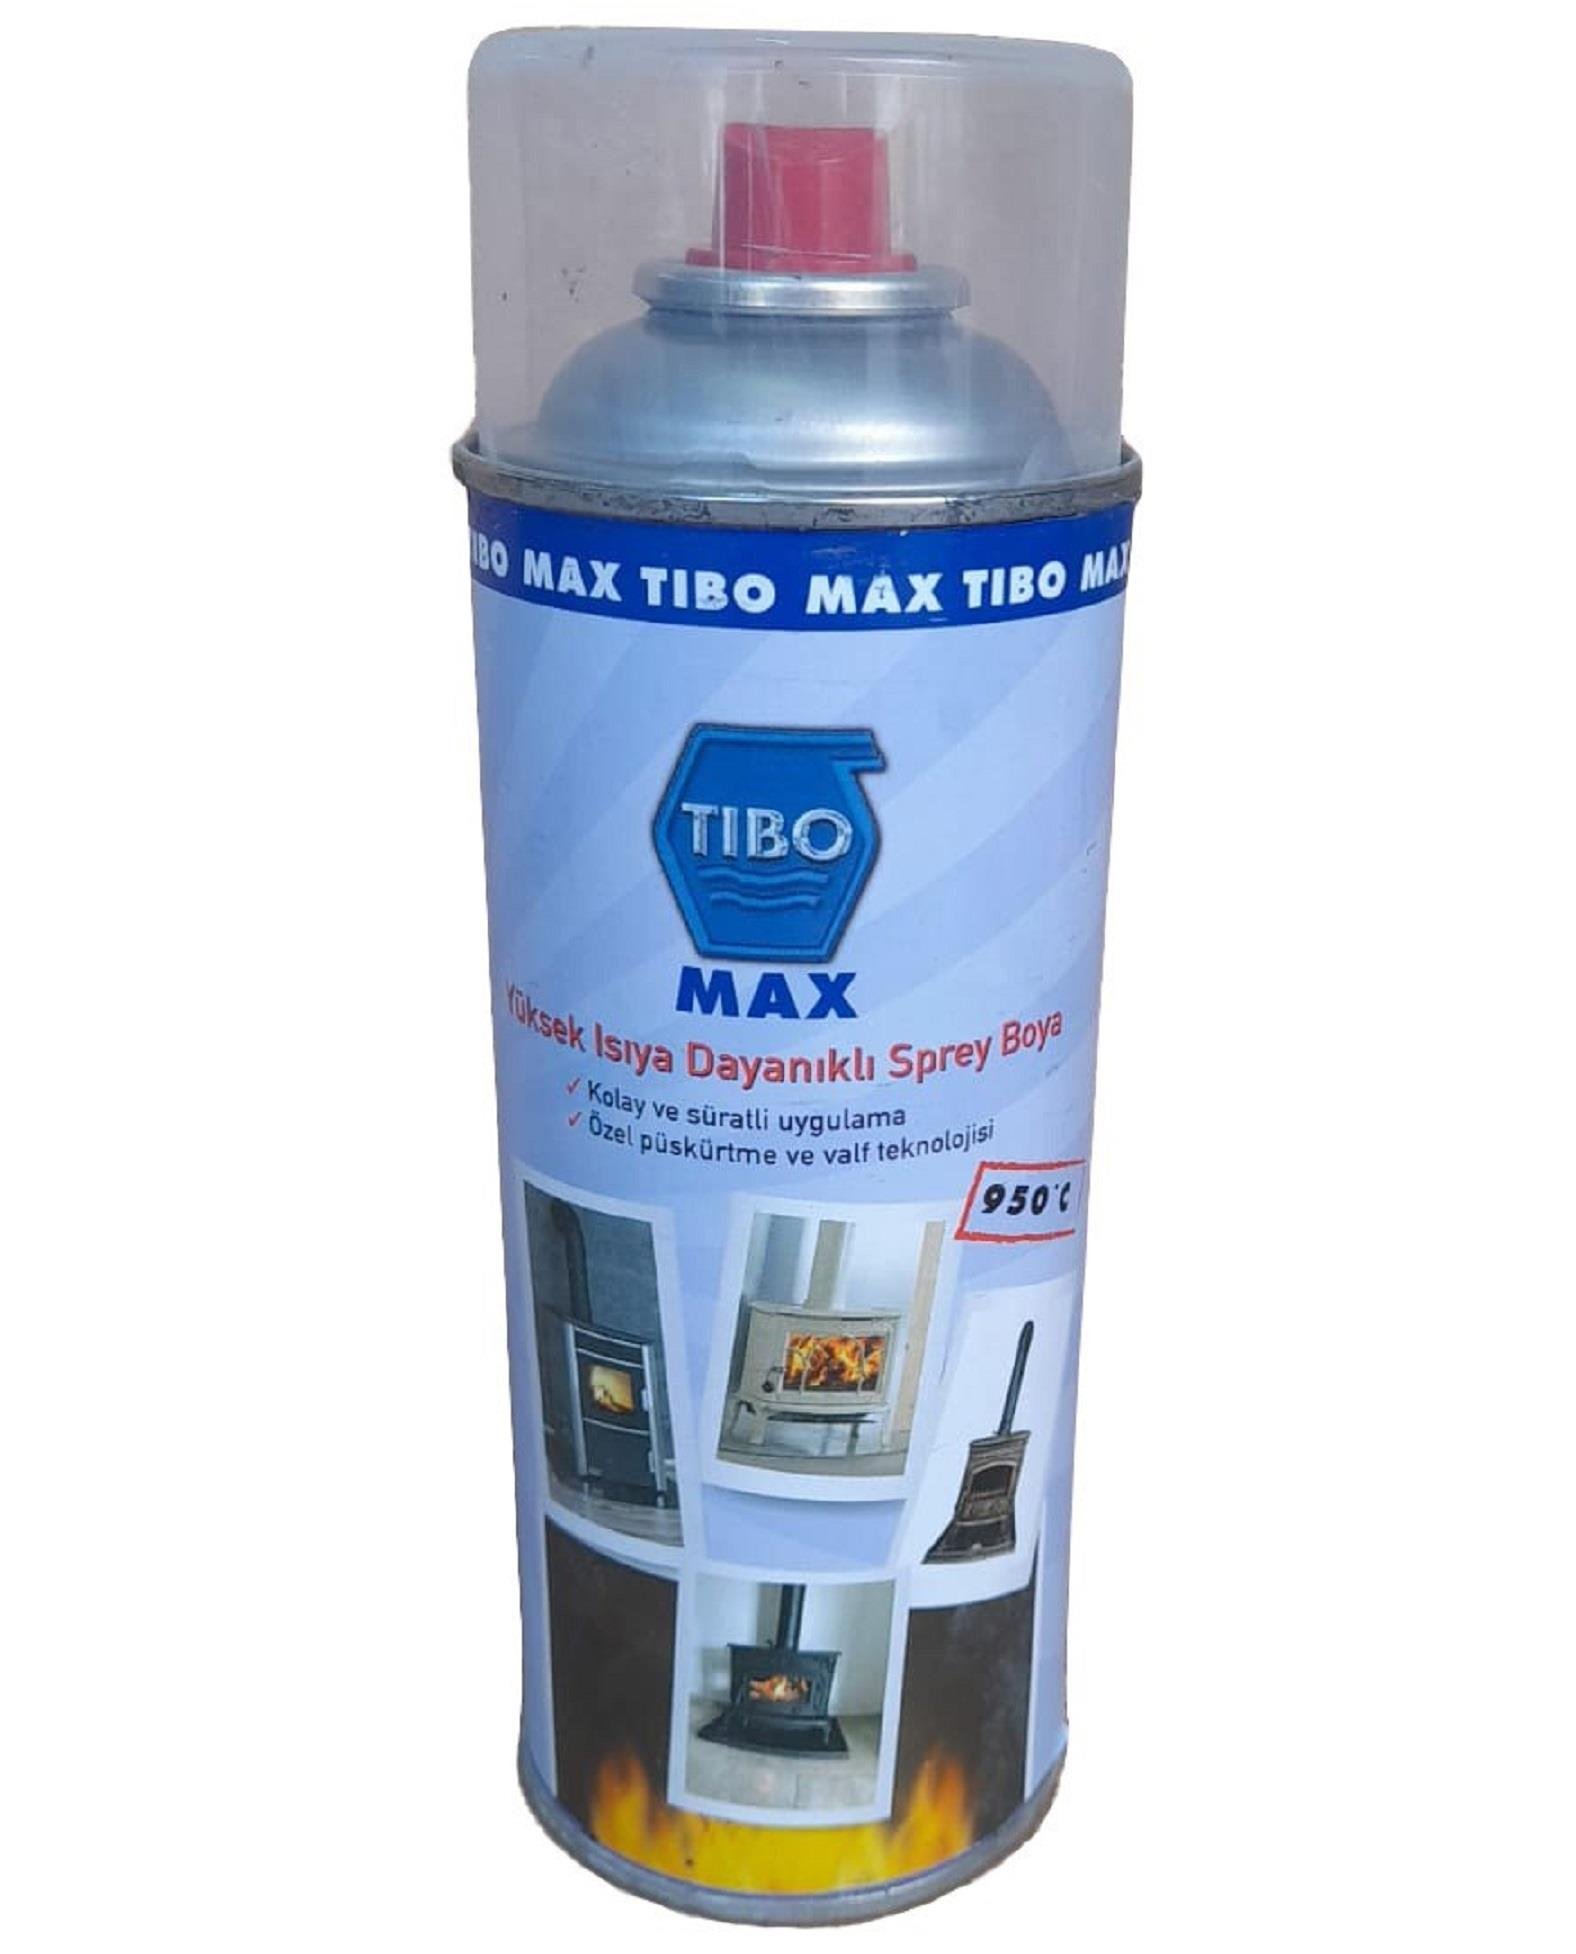 TIBO MAX Yüksek Isıya Dayanıklı Metalik Siyah Sprey Şömine Boyası | Her  Bütçeye Uygun Şömine | bakalimnevarmis.com